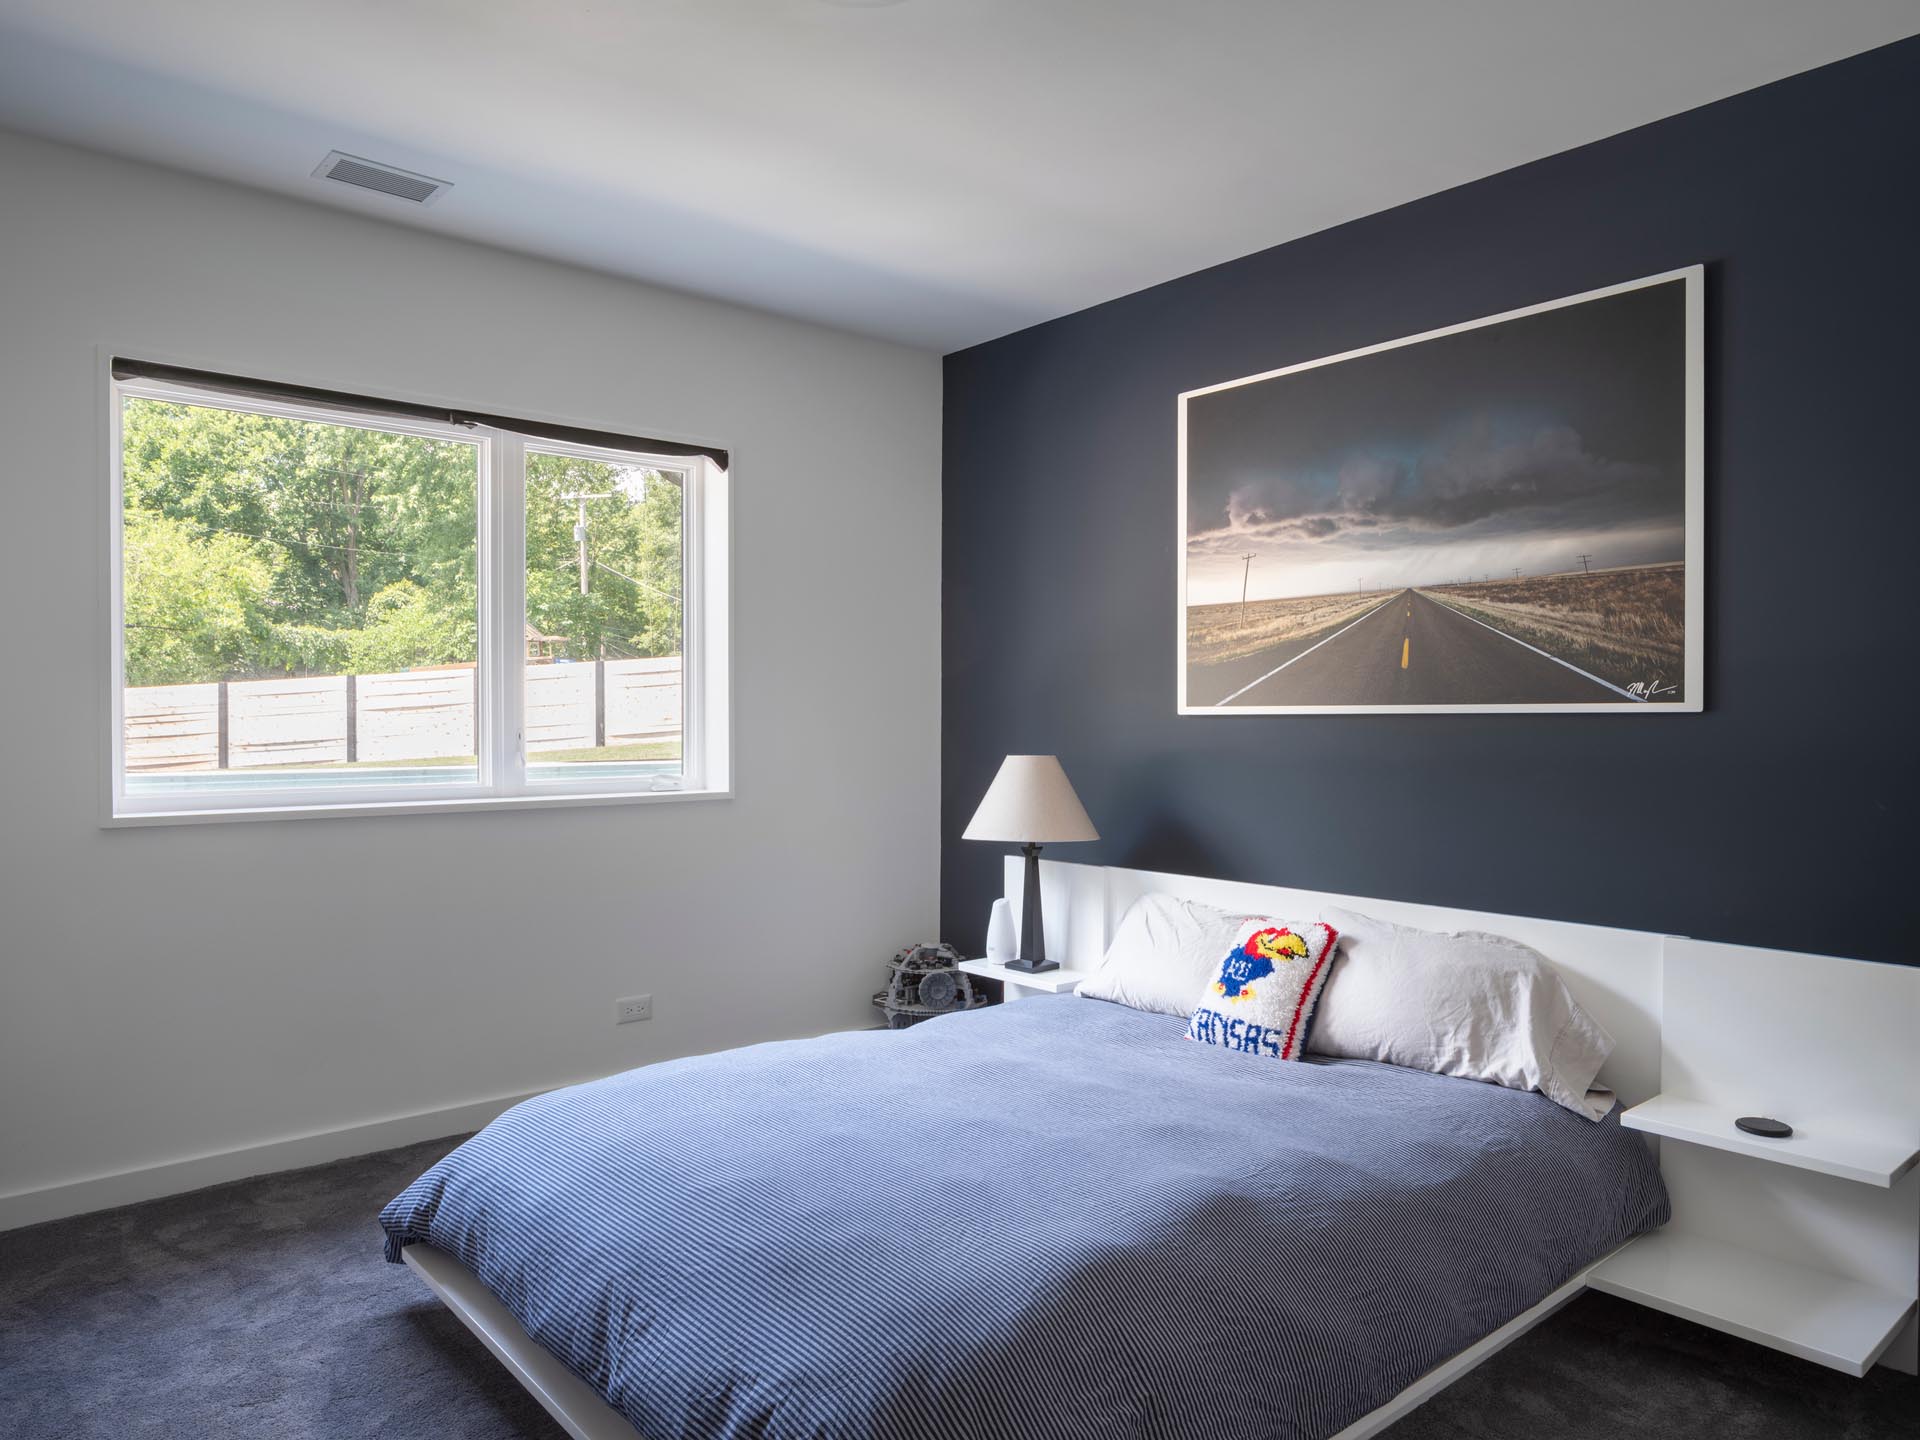 Современная спальня с матовой черной акцентной стеной, контрастирующей с белым каркасом кровати и тумбочками.